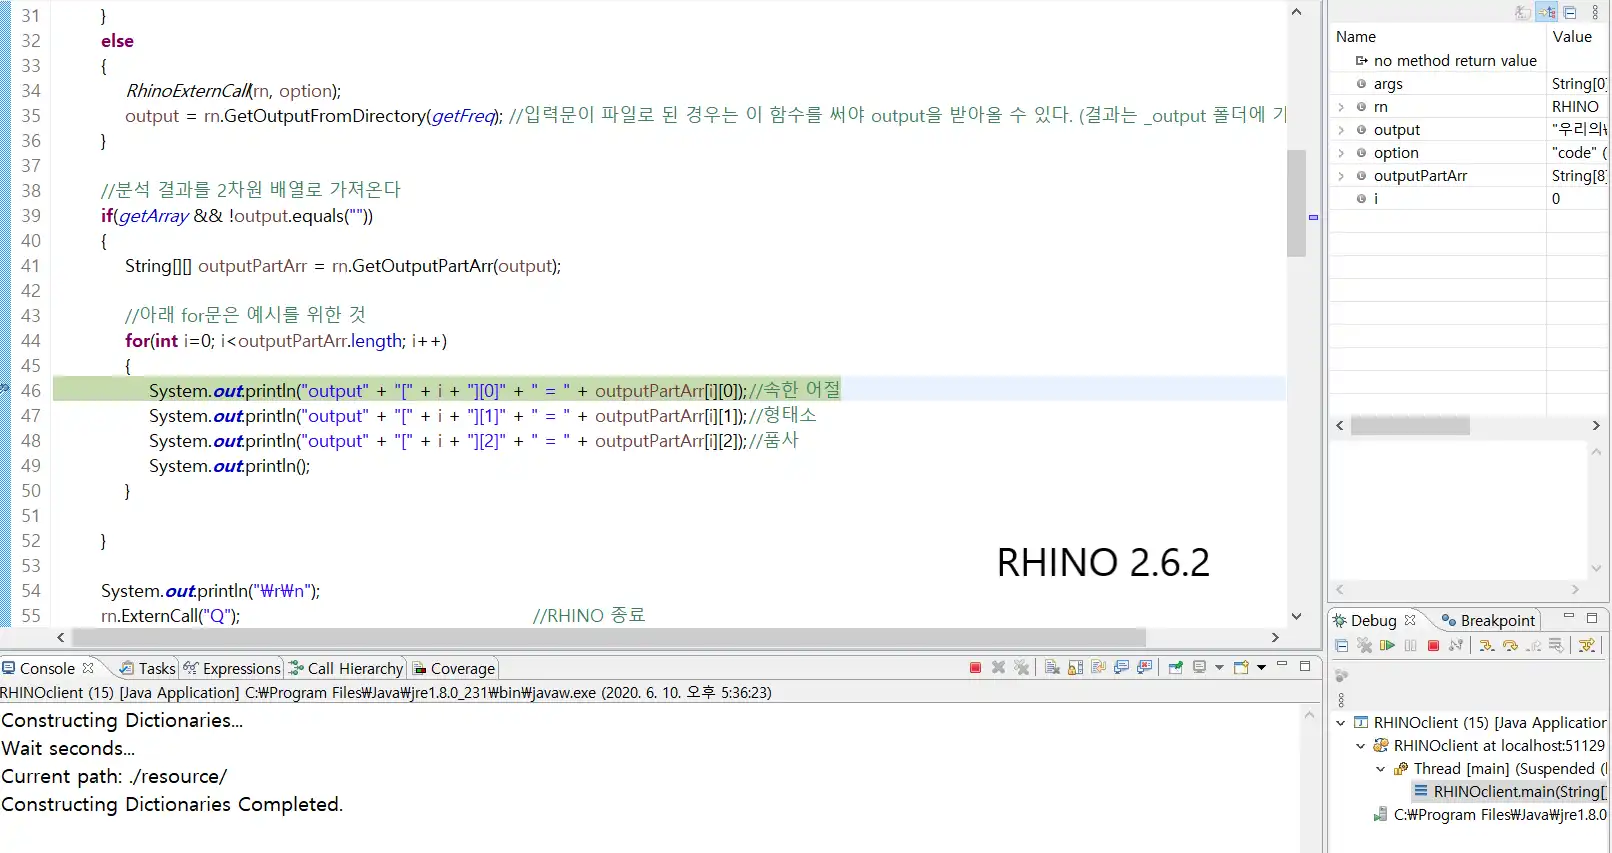 Pobierz narzędzie internetowe lub aplikację internetową Korean Analyzer Rhino